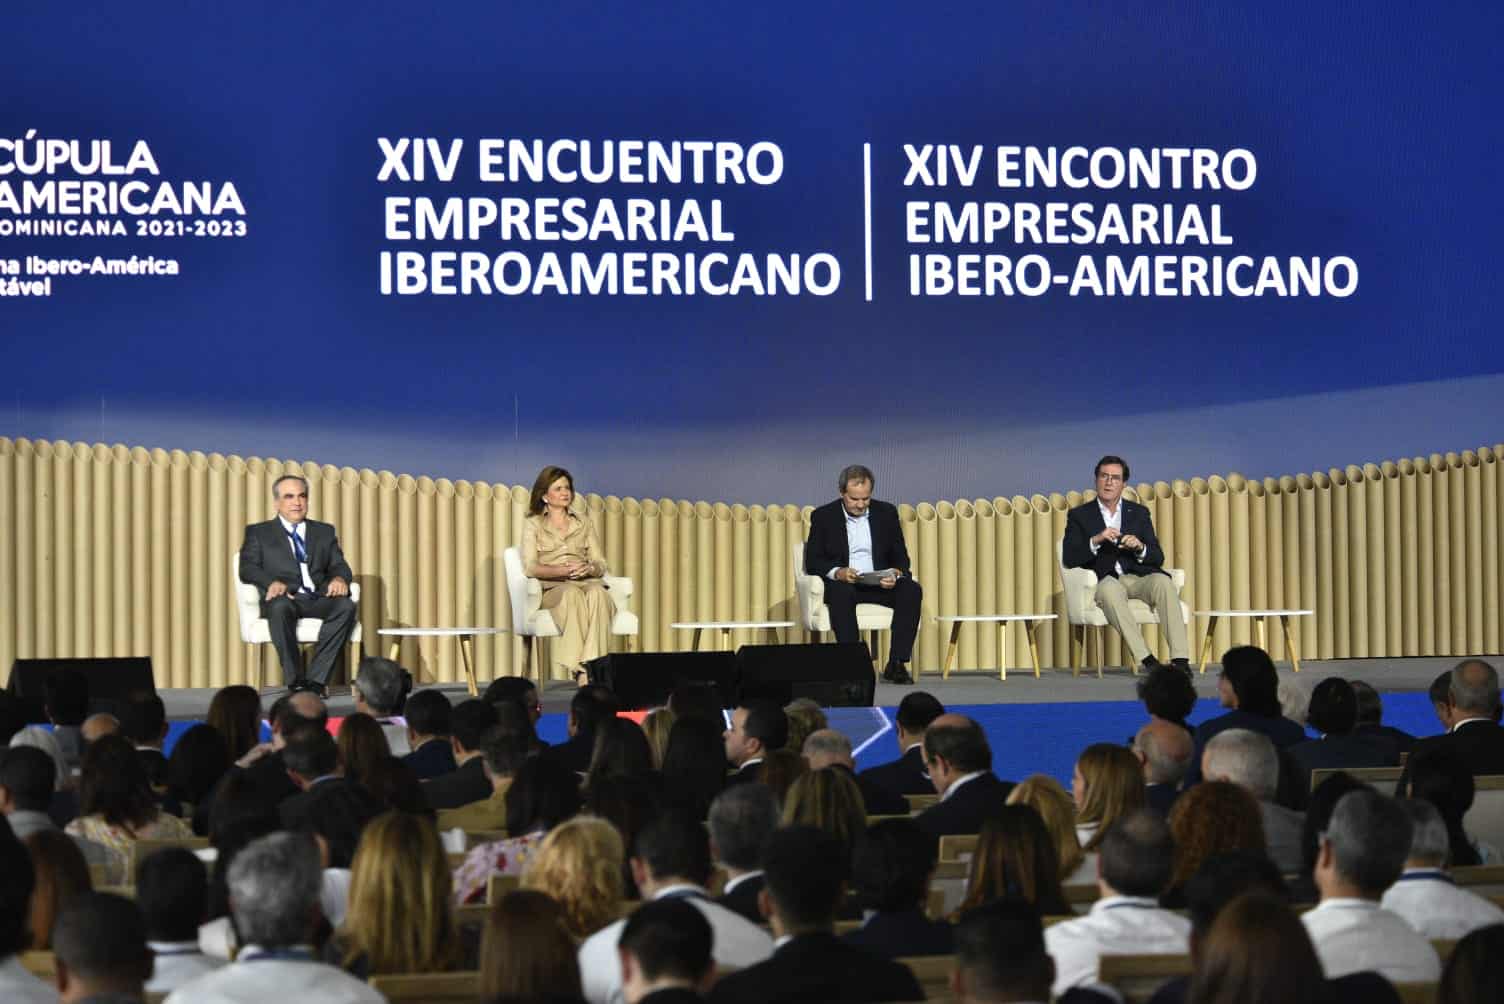 Apelan a la unión y el fomento de alianzas público-privadas en el XIV Encuentro Empresarial Iberoamericano – El Profe Show